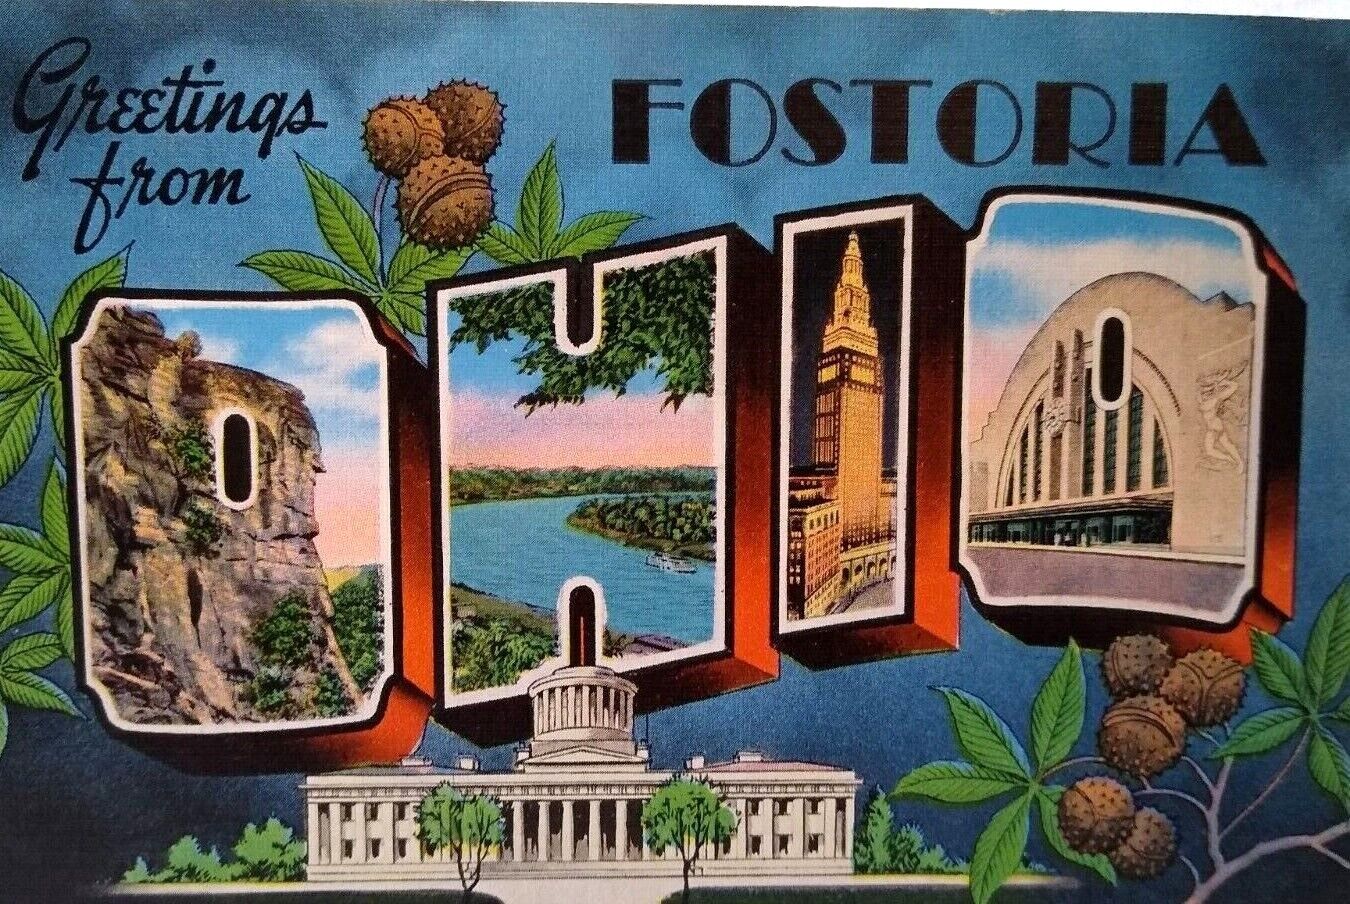 Greetings From Fostoria Ohio Large Big Letter Postcard Linen Unused Vintage